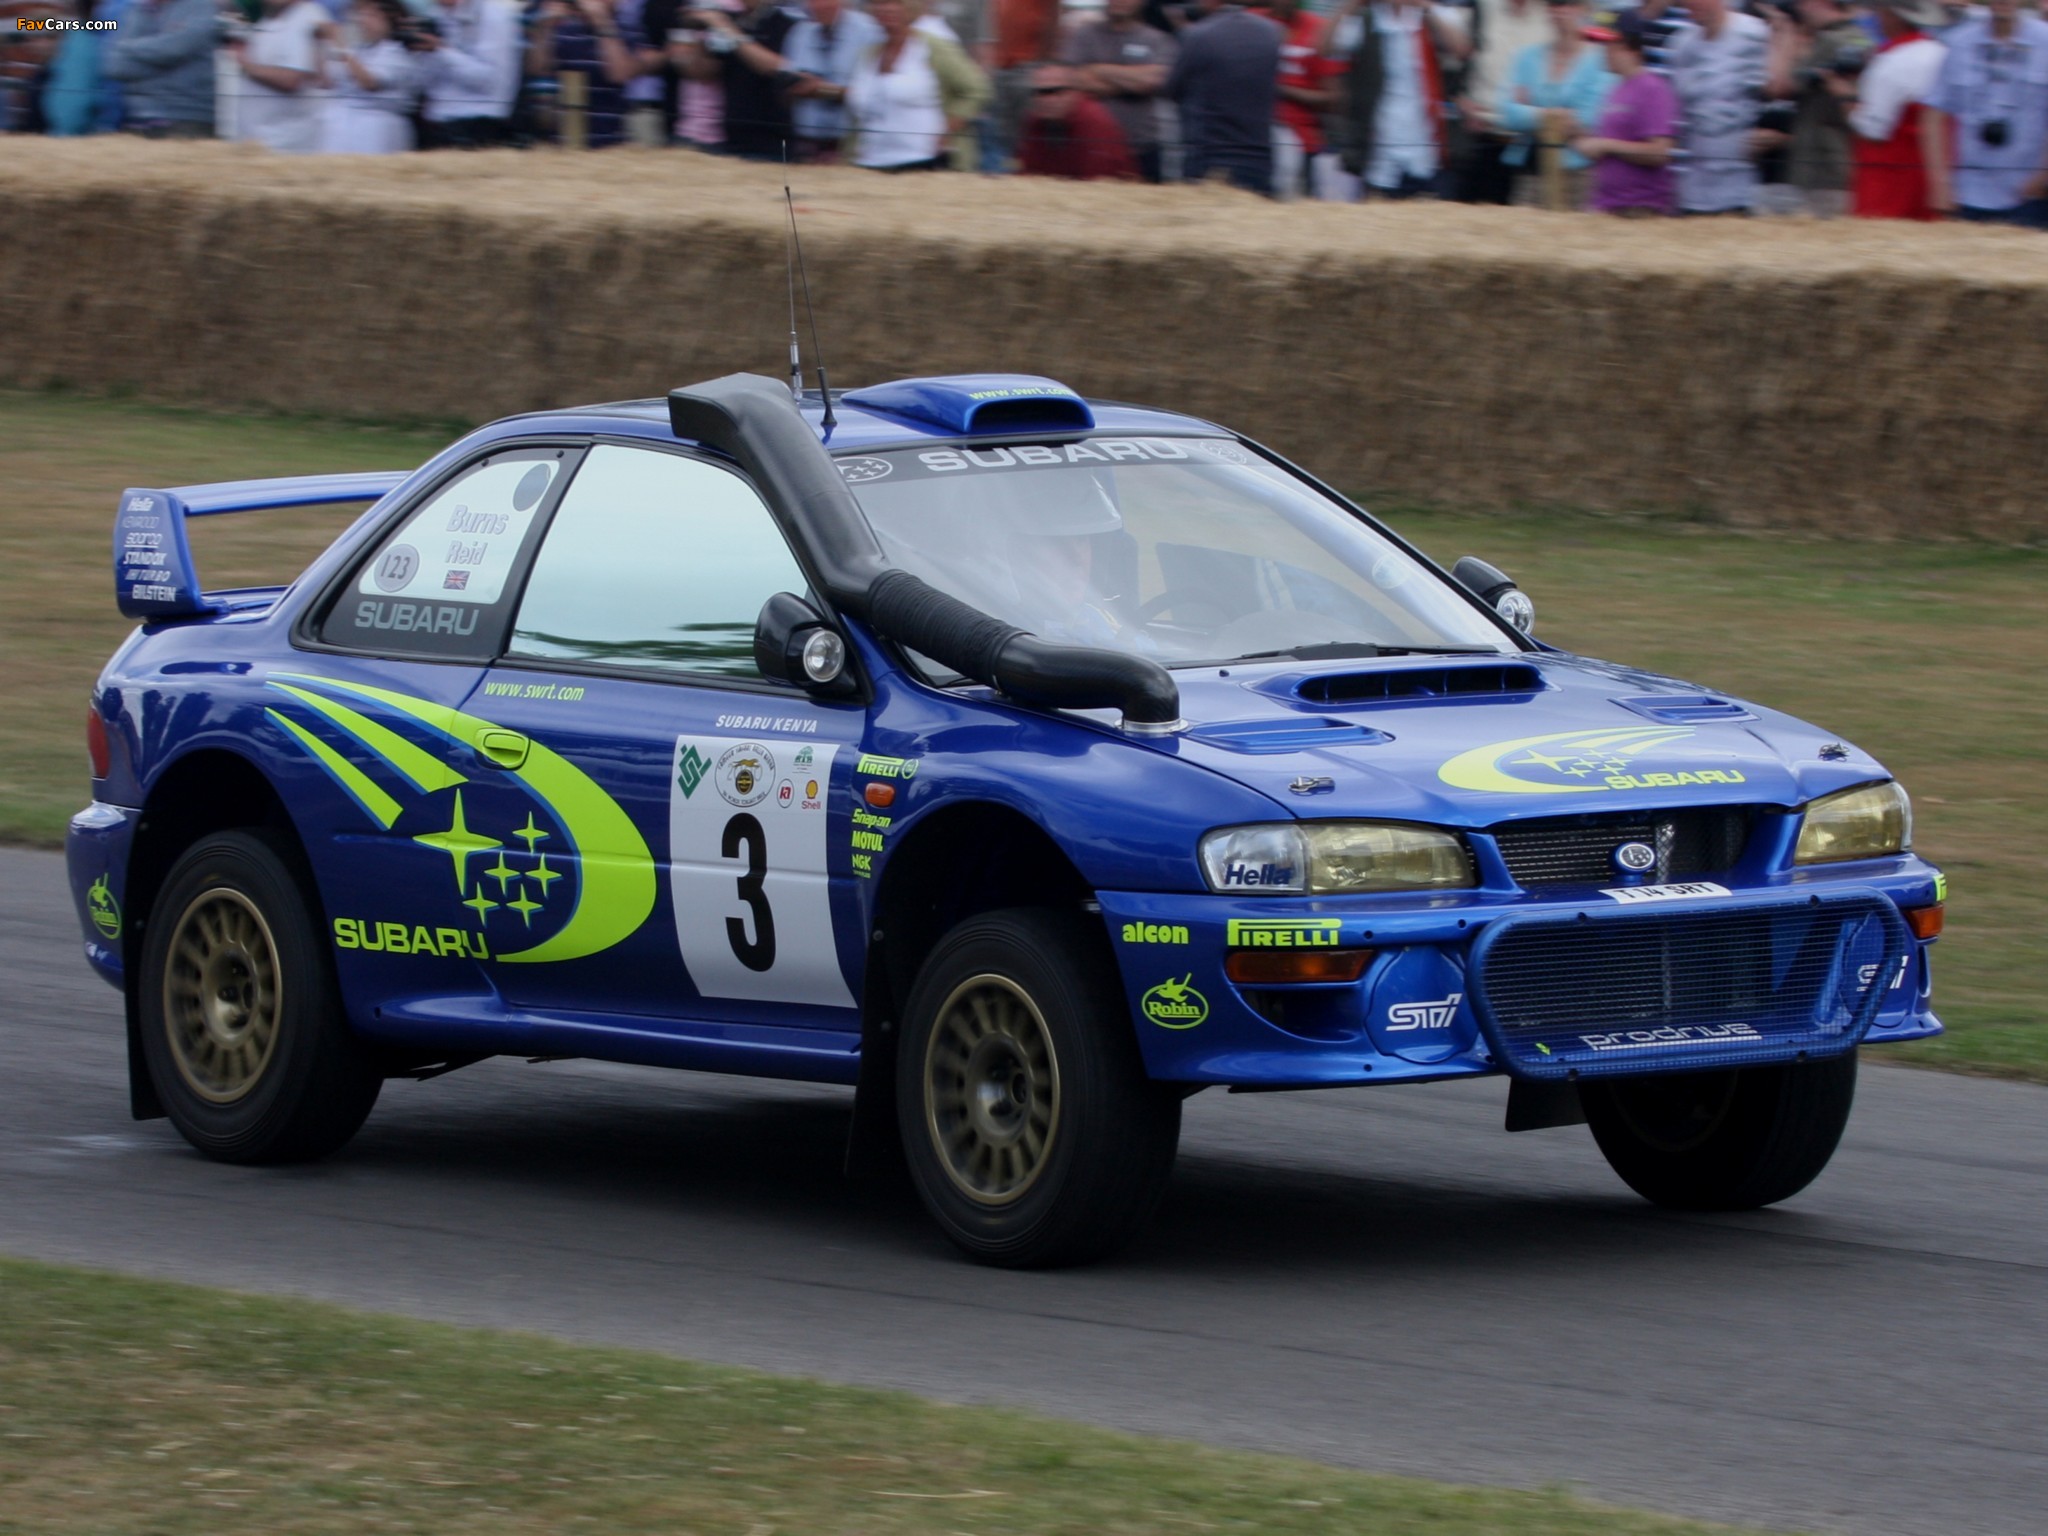 1997 Subaru Impreza WRC